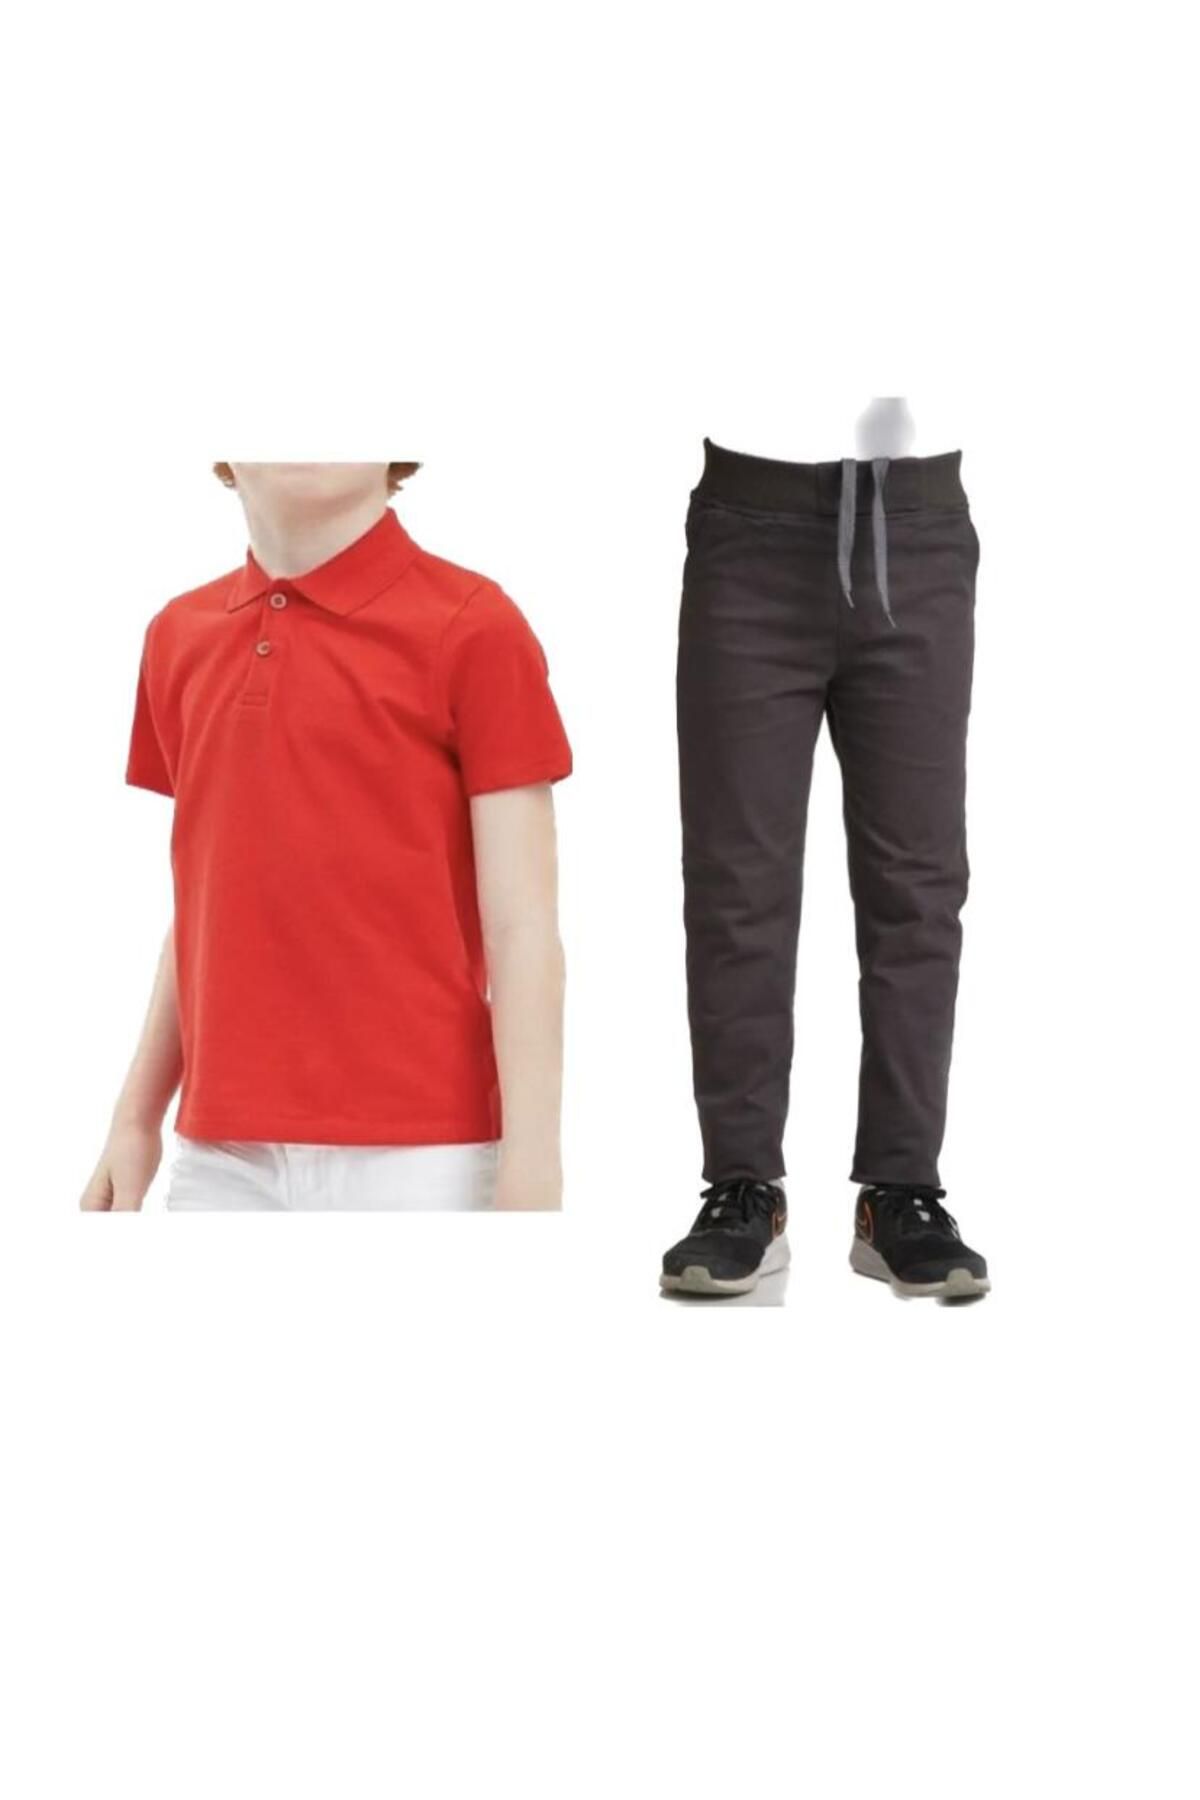 FATELLA Unisex çocuk okul ribana bel pantolon - kırmızı kısa kol Polo yaka Tişört İkili takım